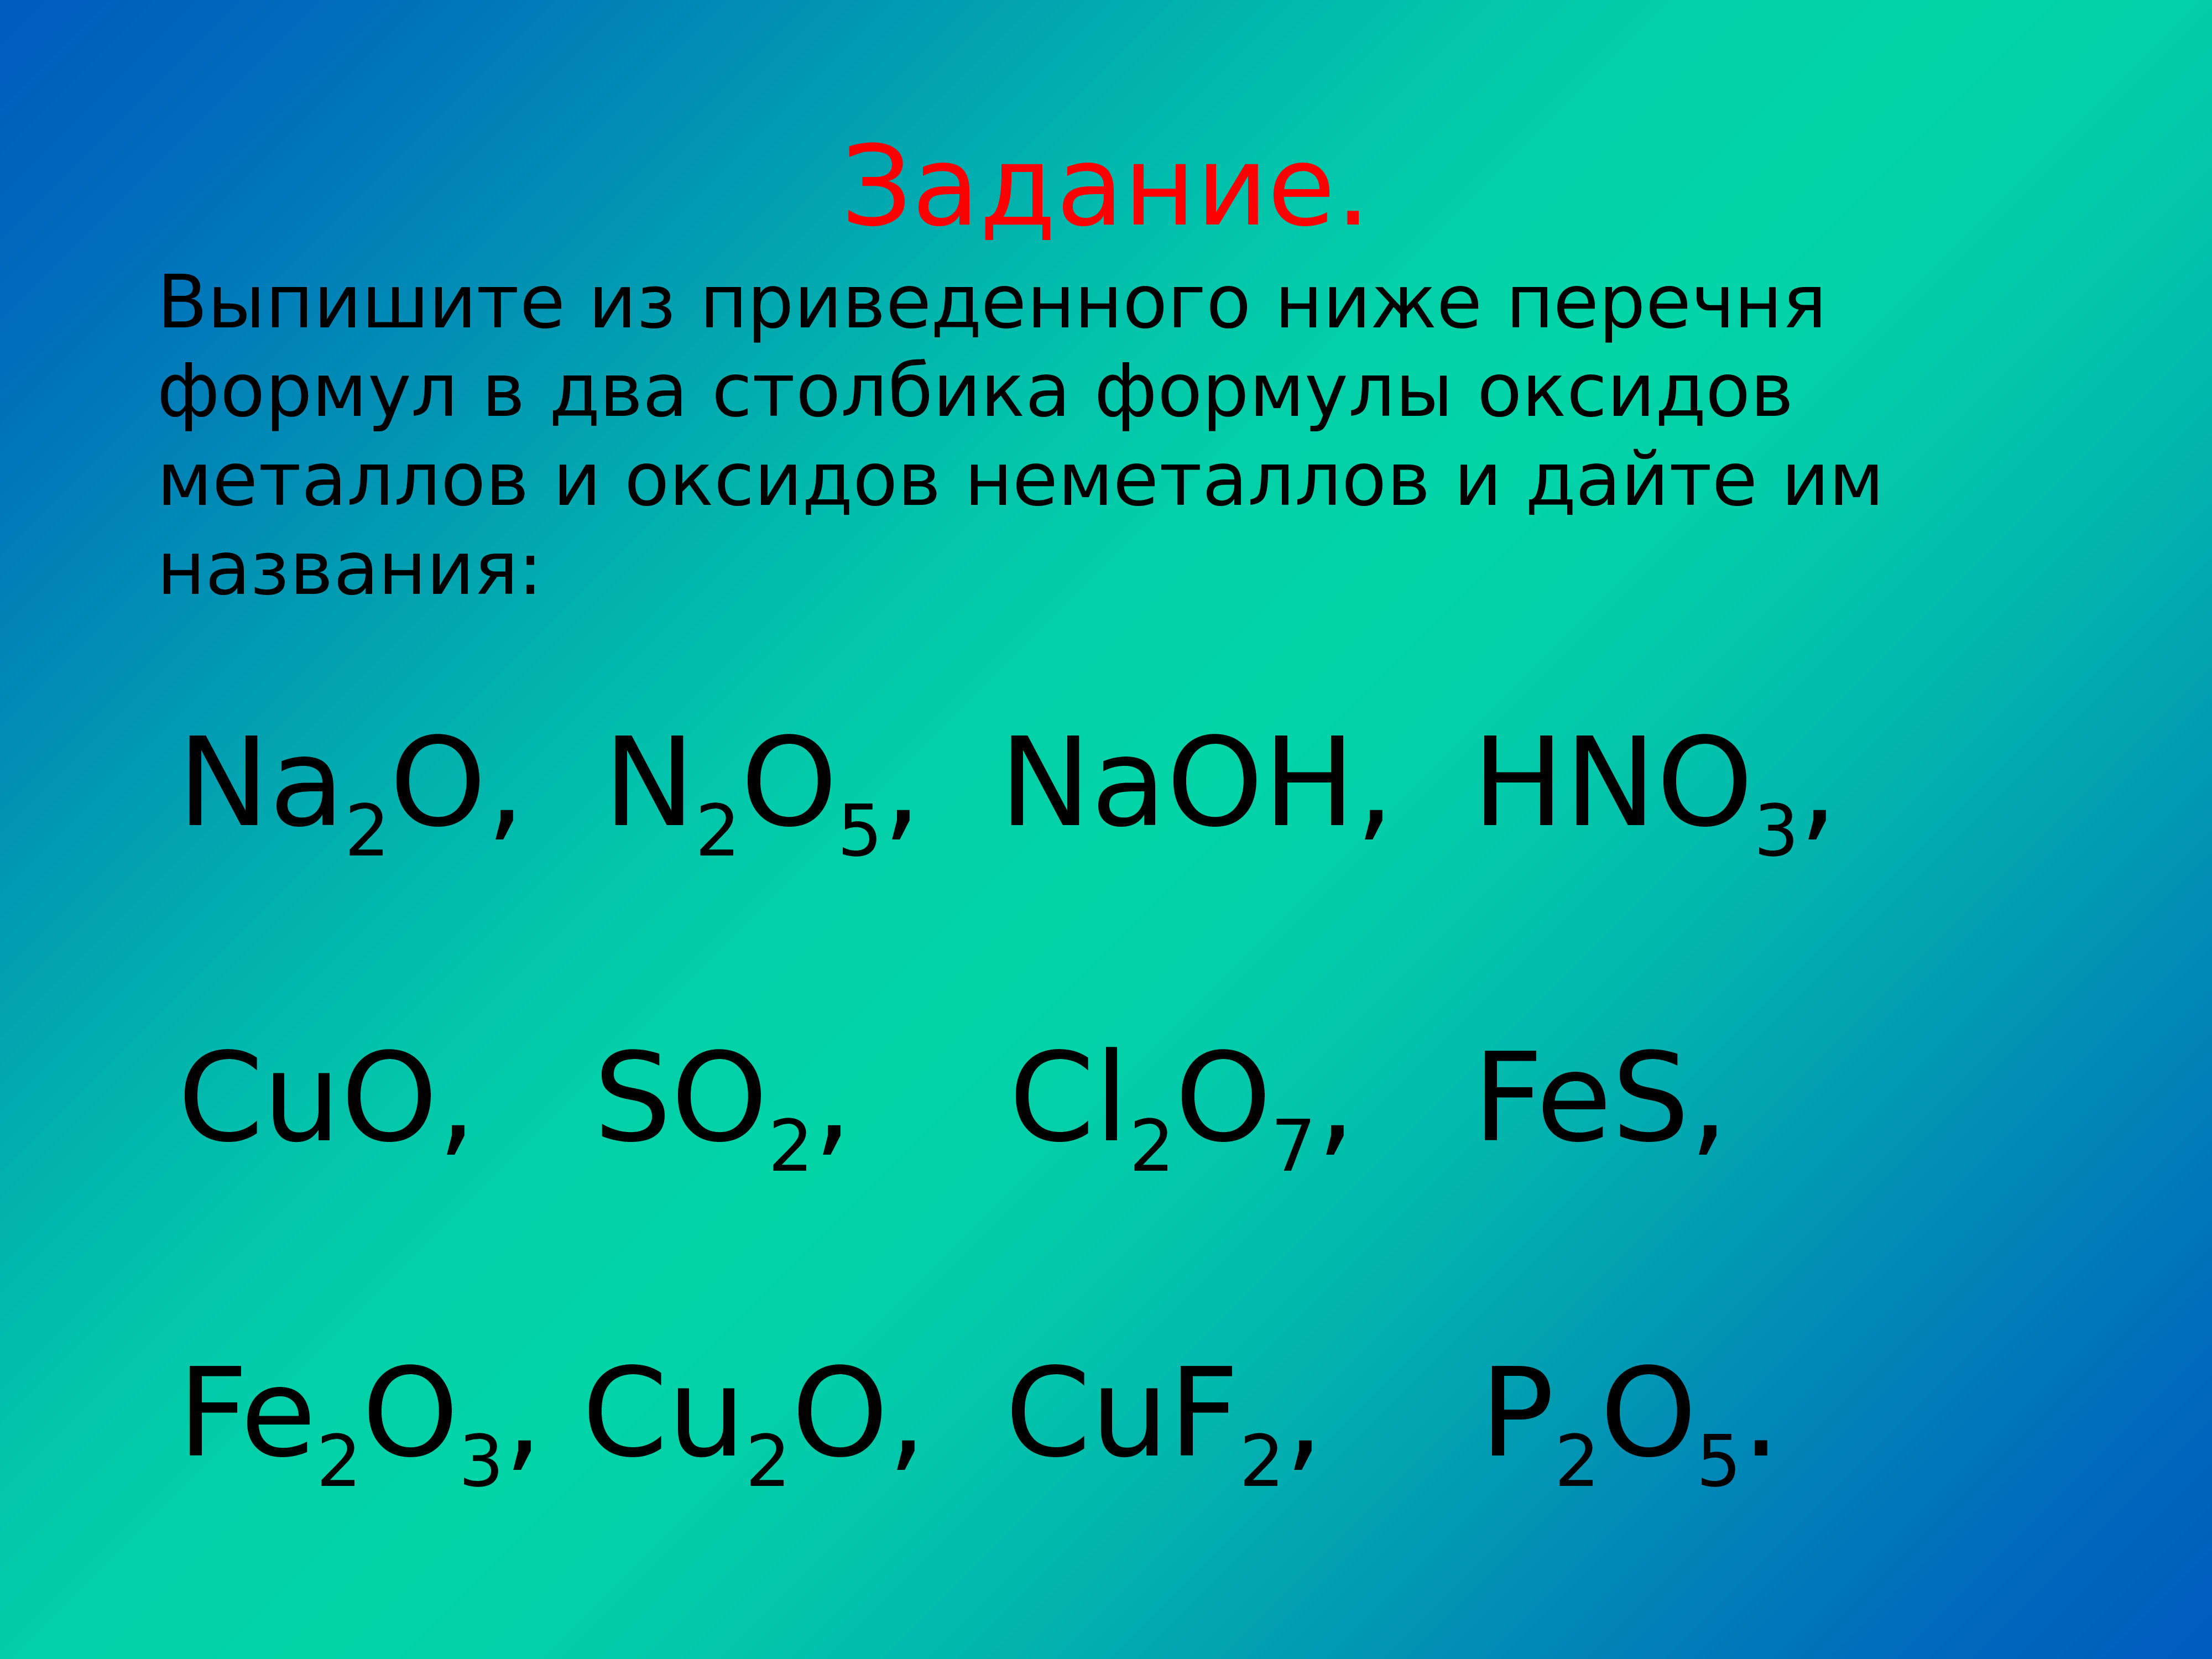 Оксиды элемента формула и название. Формулы соединения 10 оксидов. Оксиды формулы и названия. Формула оксида металла. Названия оксидов задания.